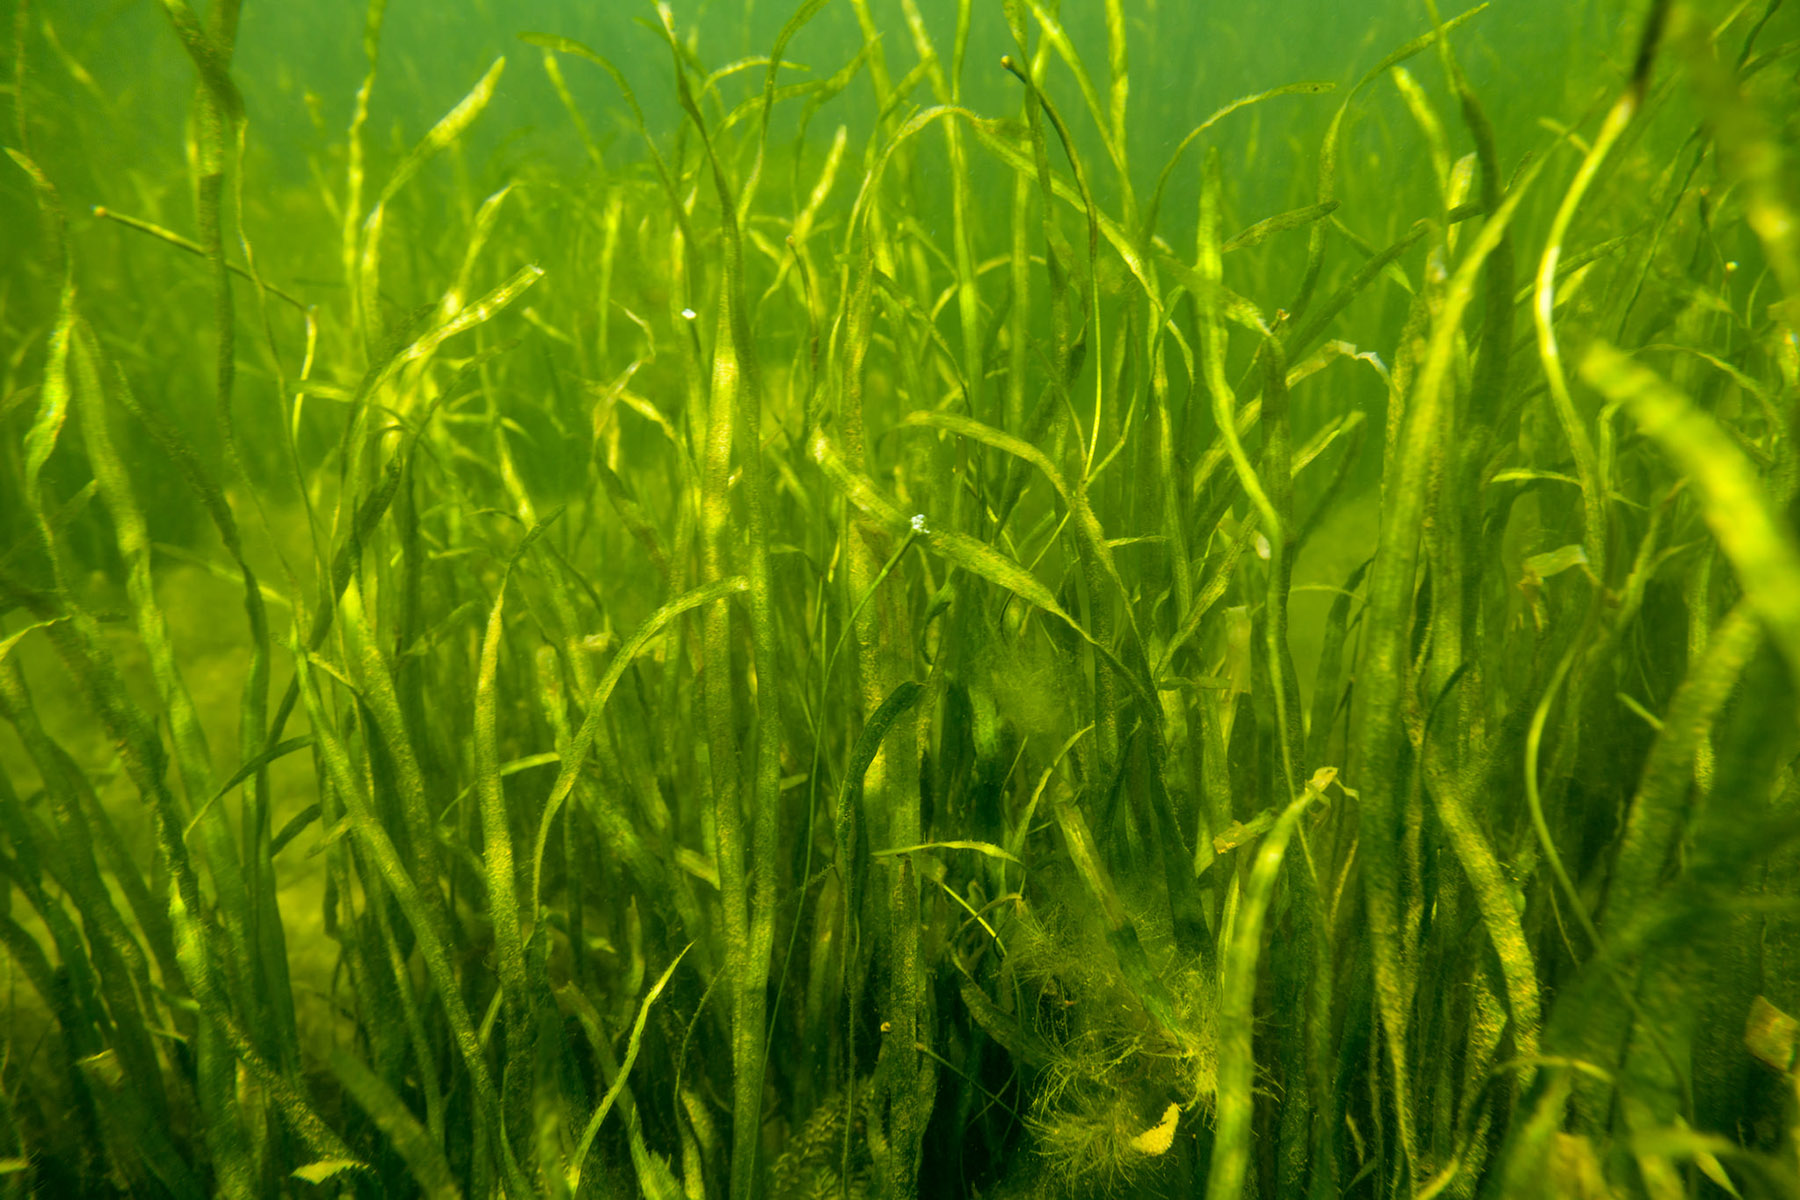 Underwater Grasses | Chesapeake Bay Program